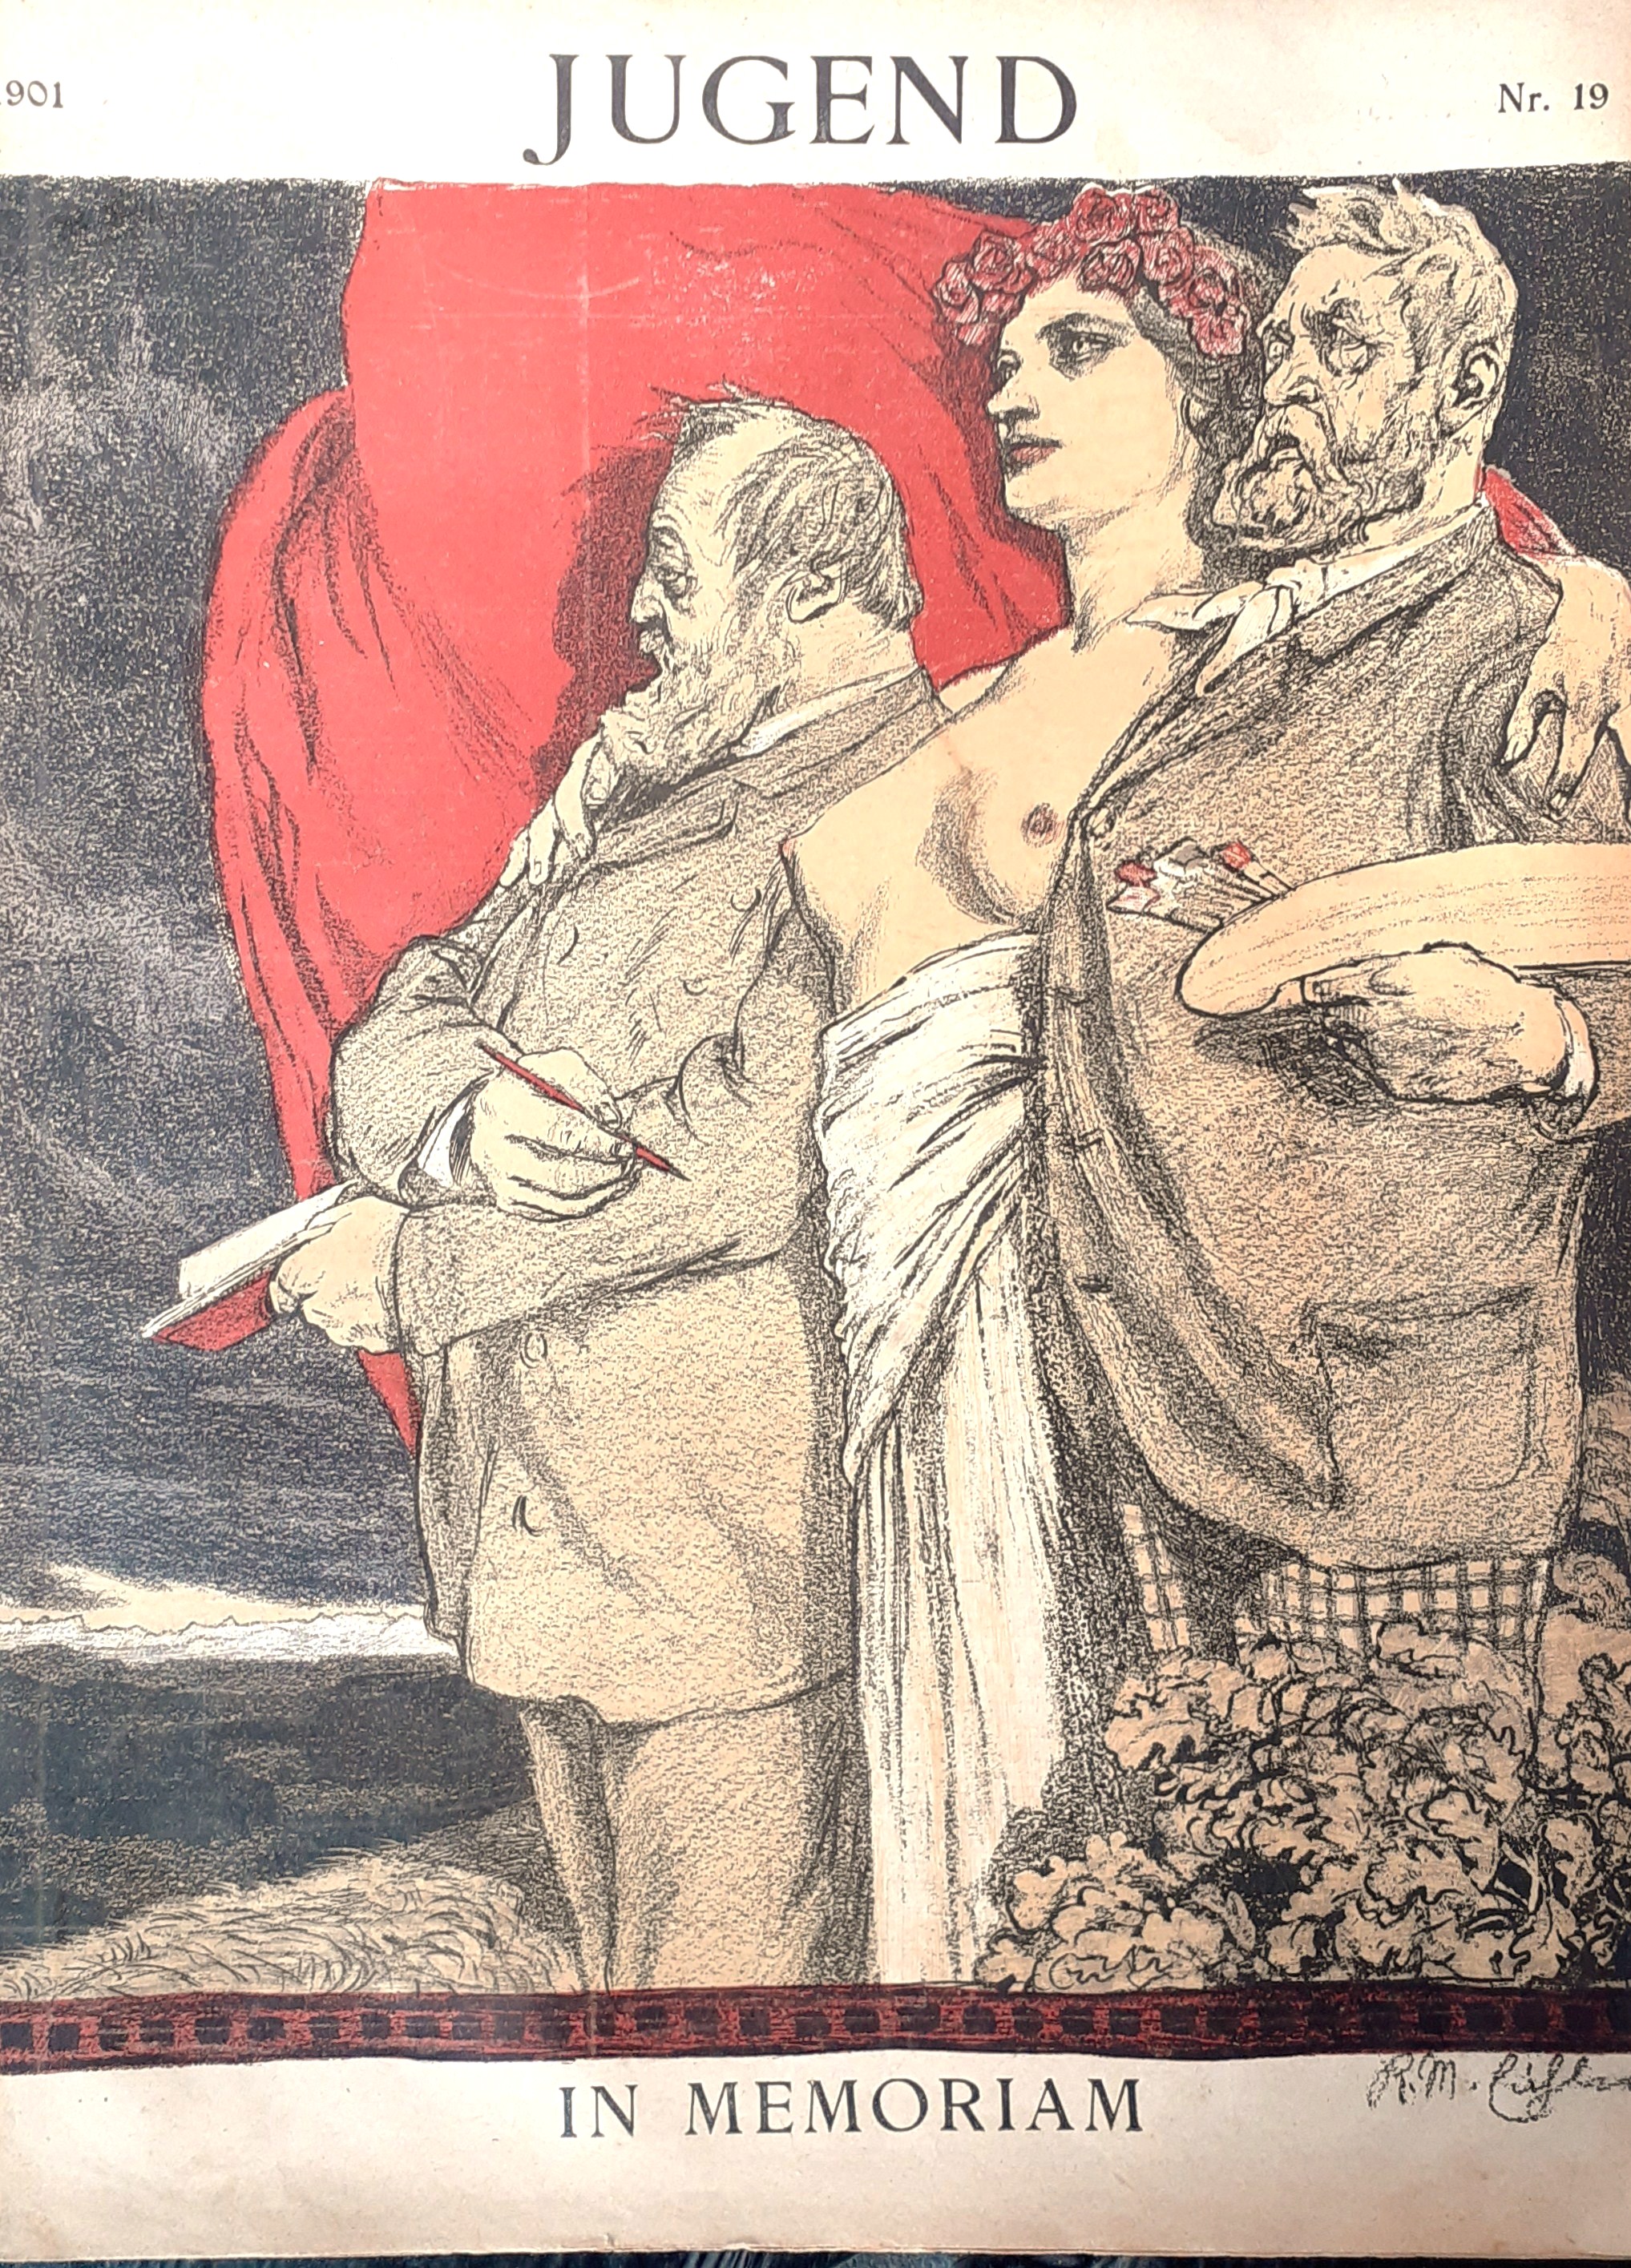 Jugend Nr. 19 del 1901 Cover in Memoria di Arnold …